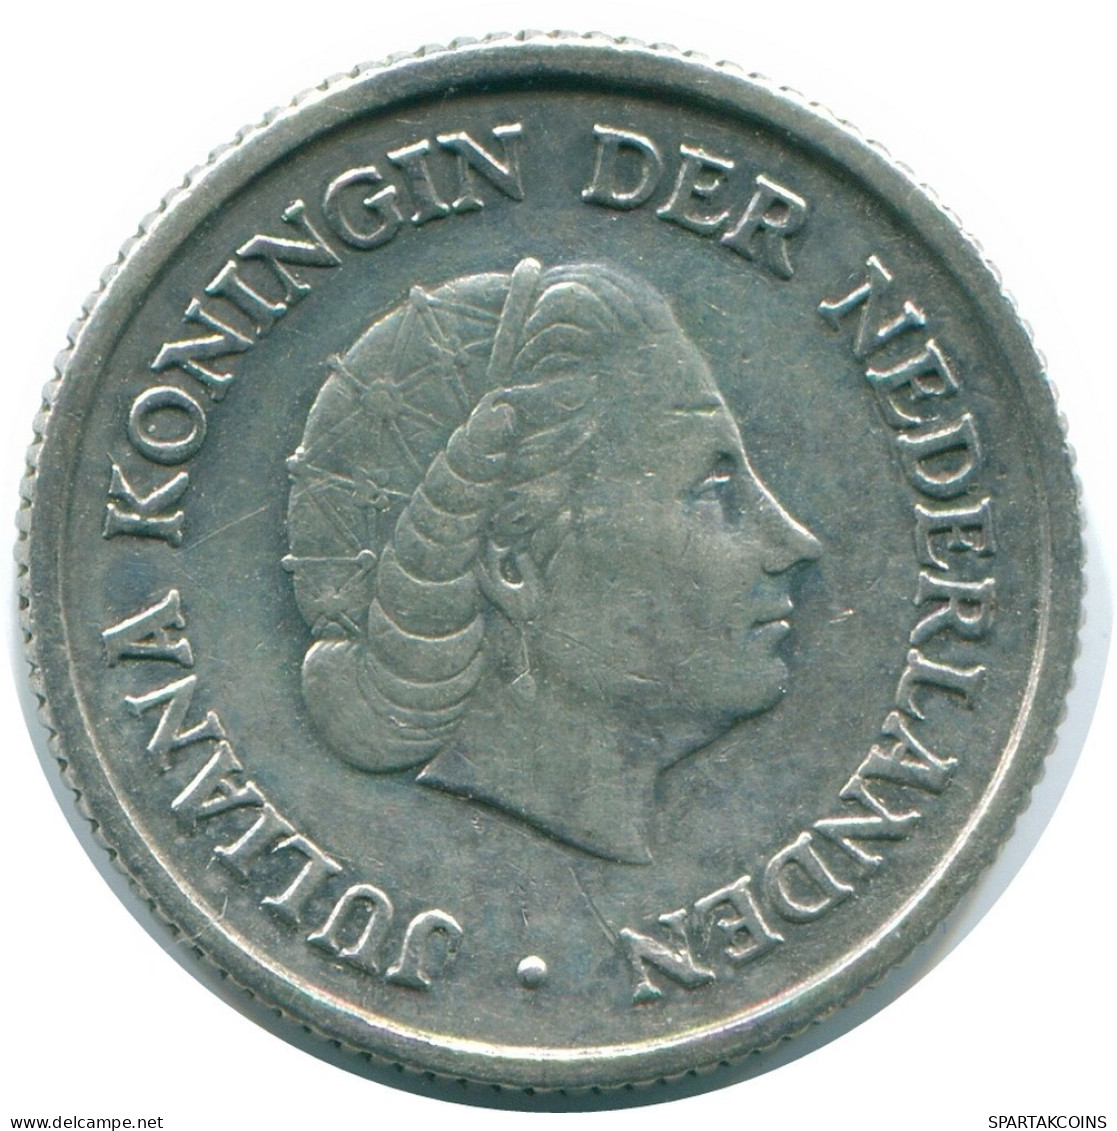 1/4 GULDEN 1957 NIEDERLÄNDISCHE ANTILLEN SILBER Koloniale Münze #NL10975.4.D.A - Niederländische Antillen